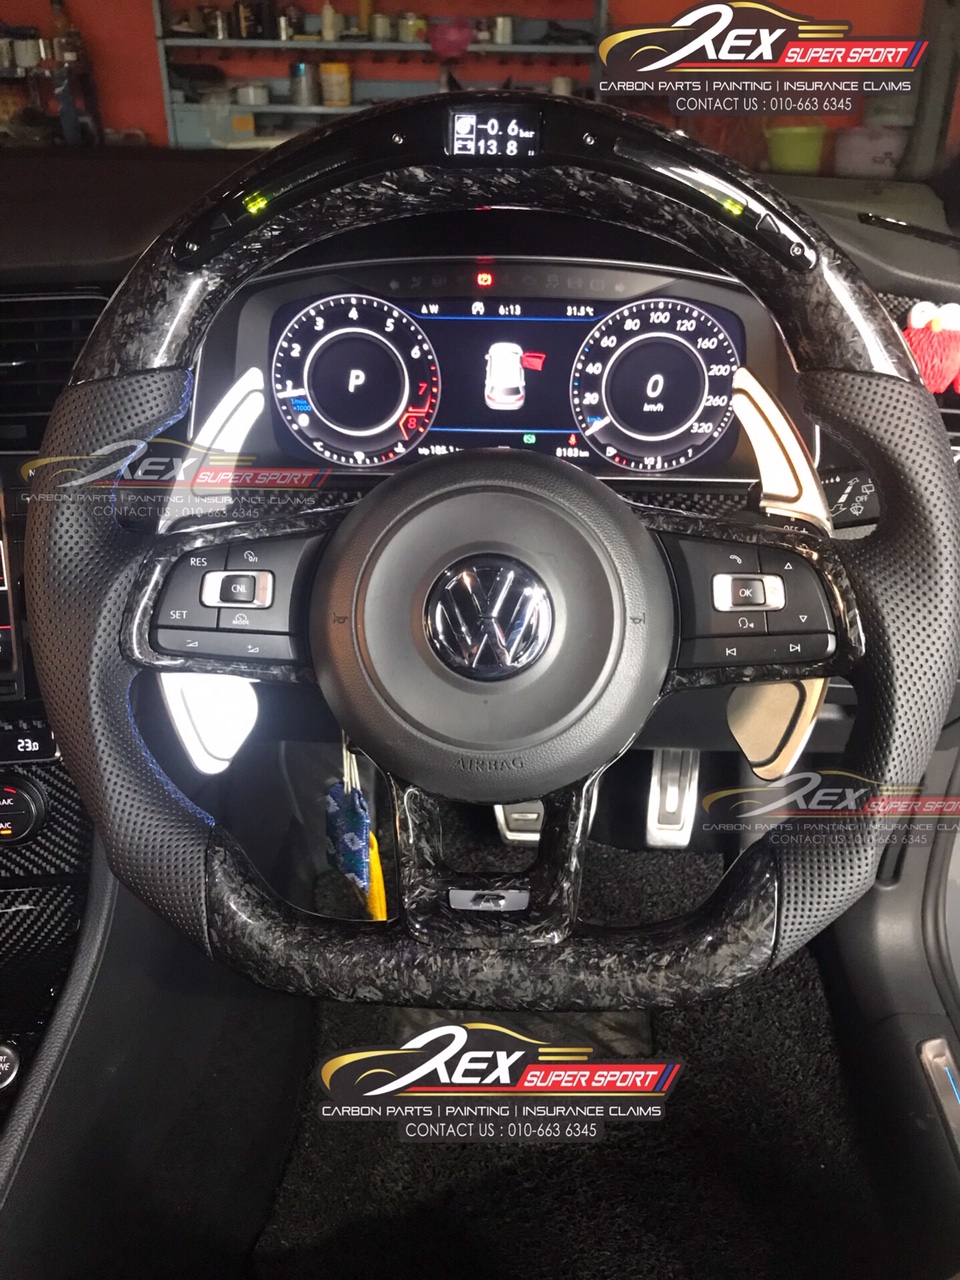 VW Performance LED Digital Forged Carbon Steering | Rexsupersport